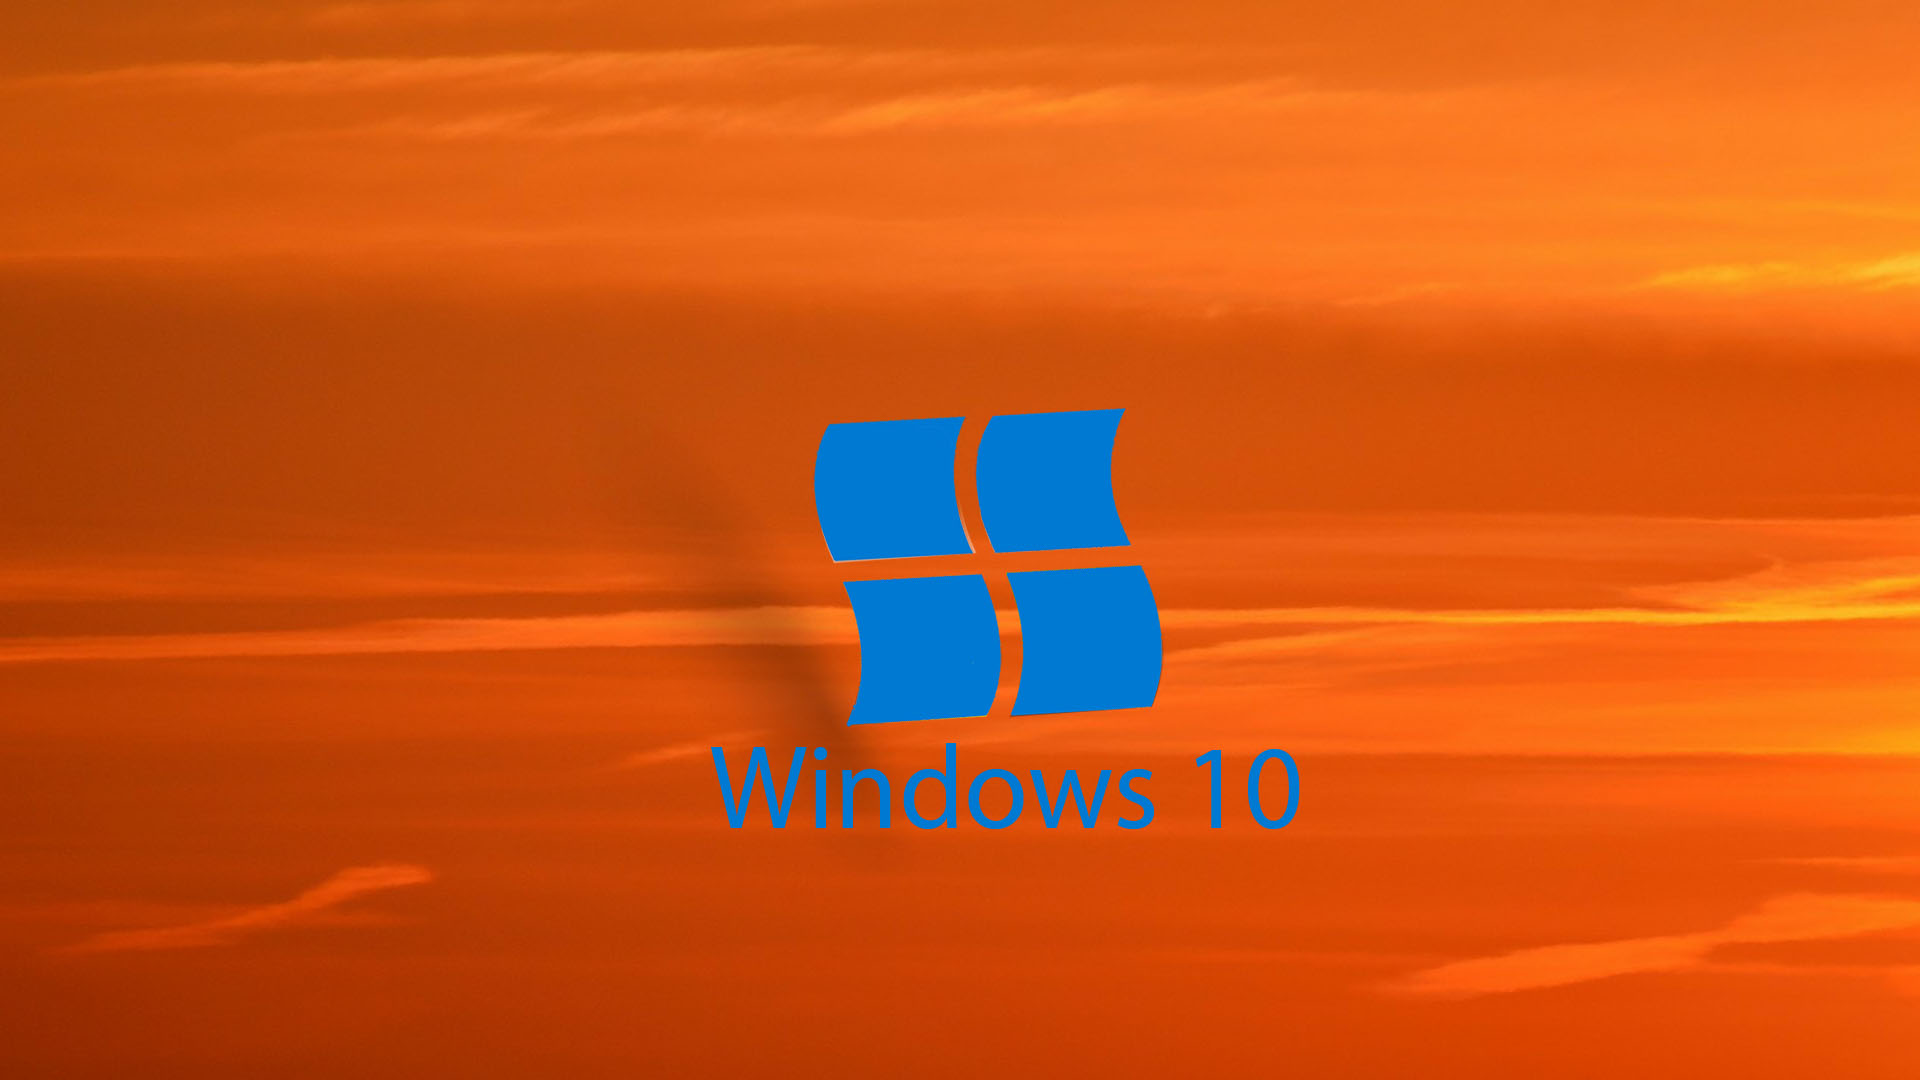 fond d'écran hd pour windows 10,orange,bleu,jaune,drapeau,ambre